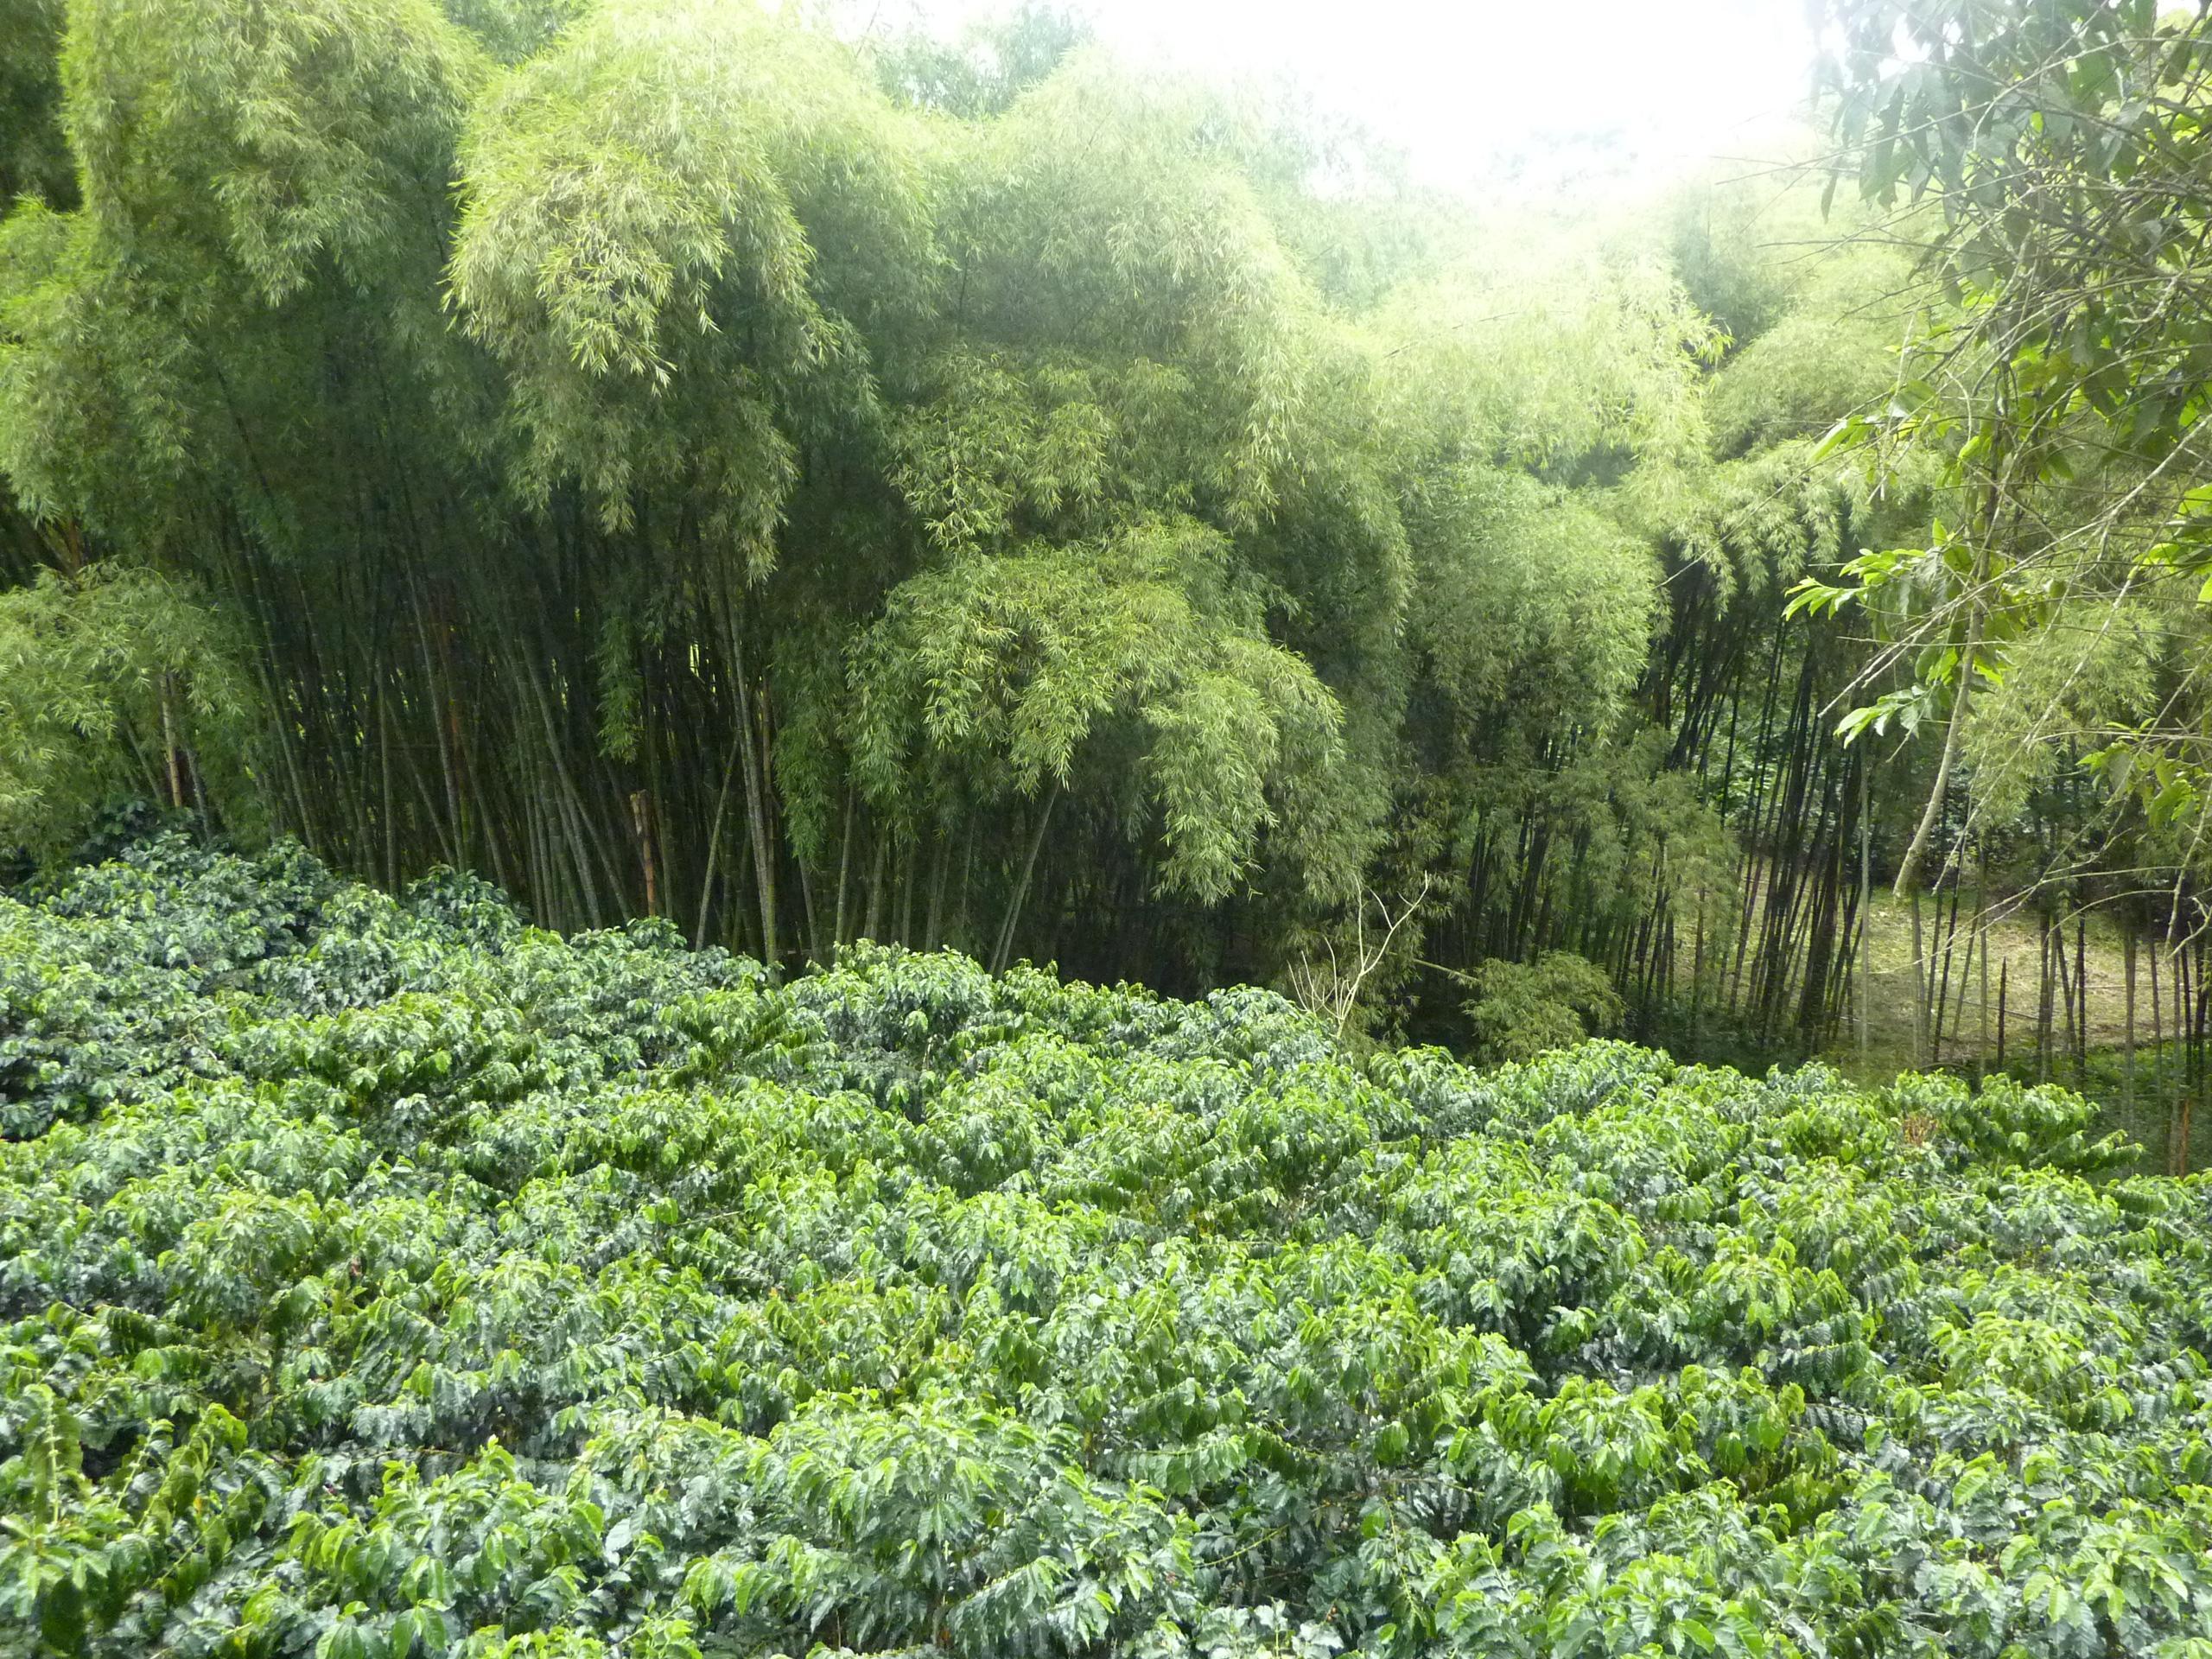 bosquete-de-bambu-al-fondo-plantacion-de-cafe-al-frente-fuente-pereira-colombia